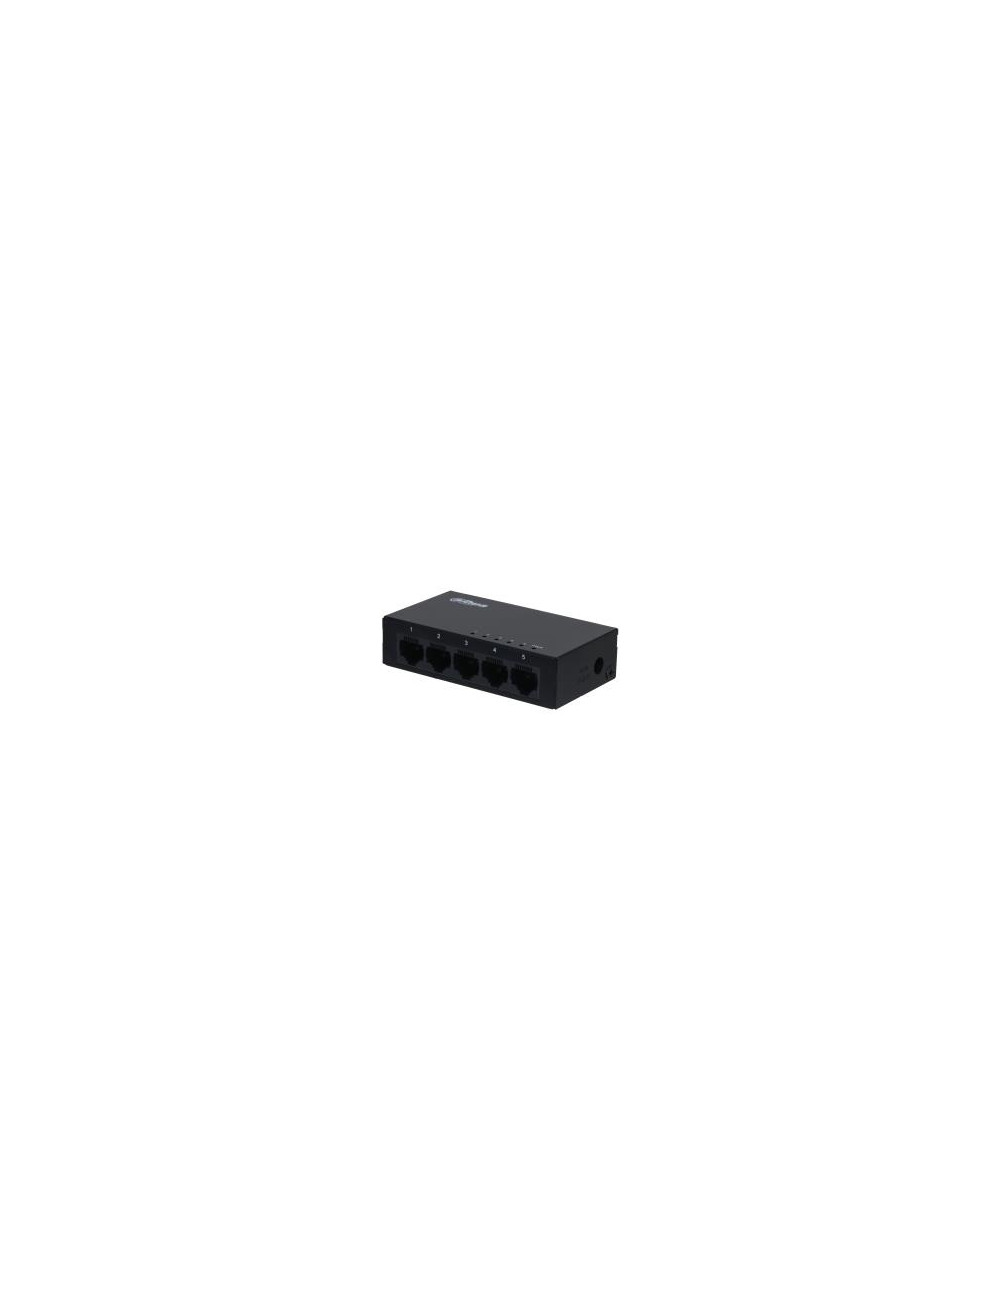 Switch|DAHUA|PFS3005-5GT-V2|Type L2|Desktop/pedestal|5x10Base-T / 100Base-TX / 1000Base-T|DH-PFS3005-5GT-V2